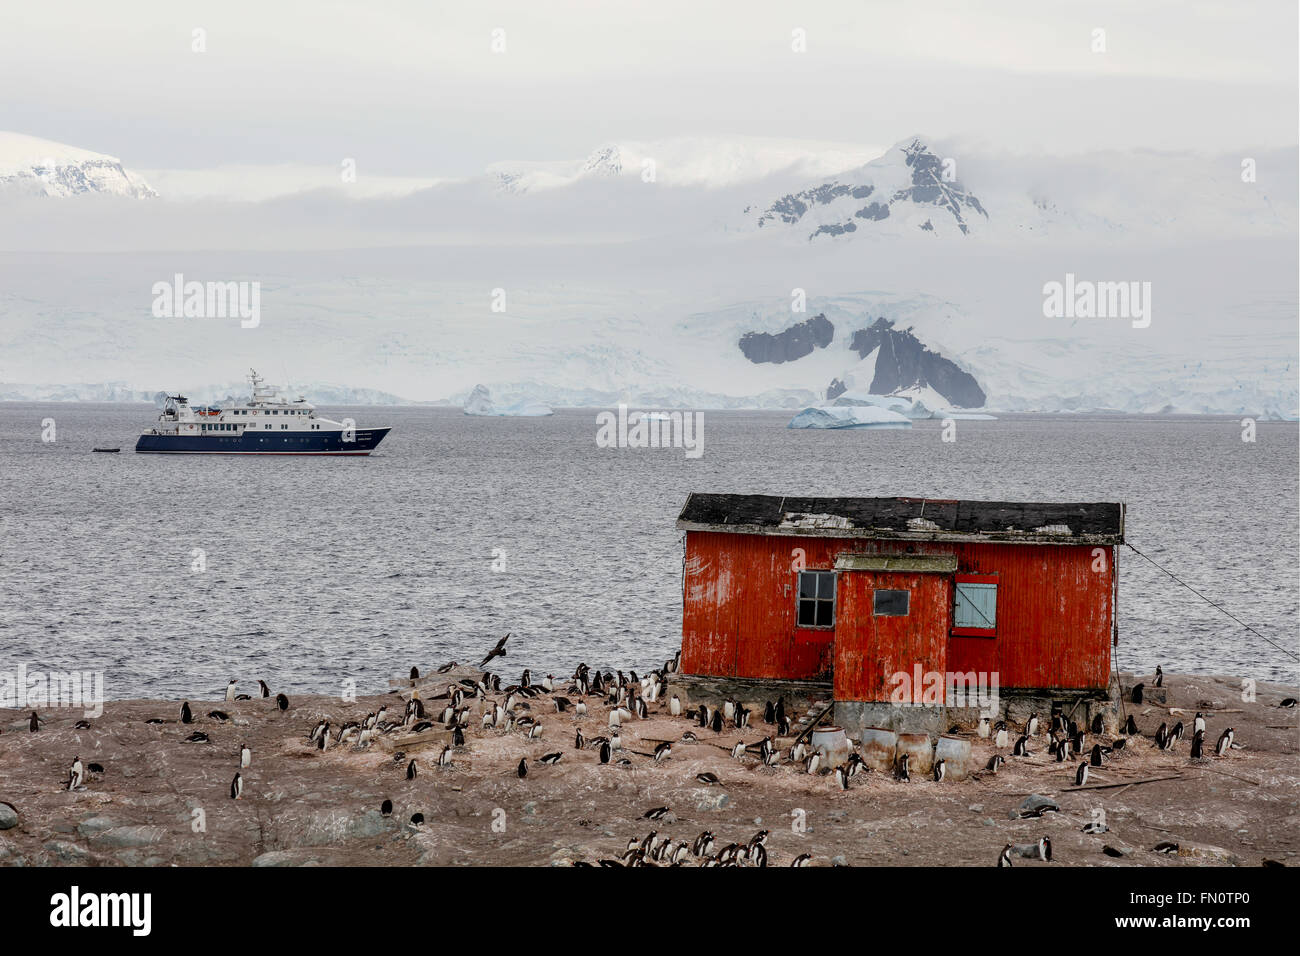 Antarktis, antarktische Halbinsel, Trinity Island, Mikkelsen Hafen, Gentoo Pinguine am Ufer, Expedition Schiff Hanse Explorer. Stockfoto